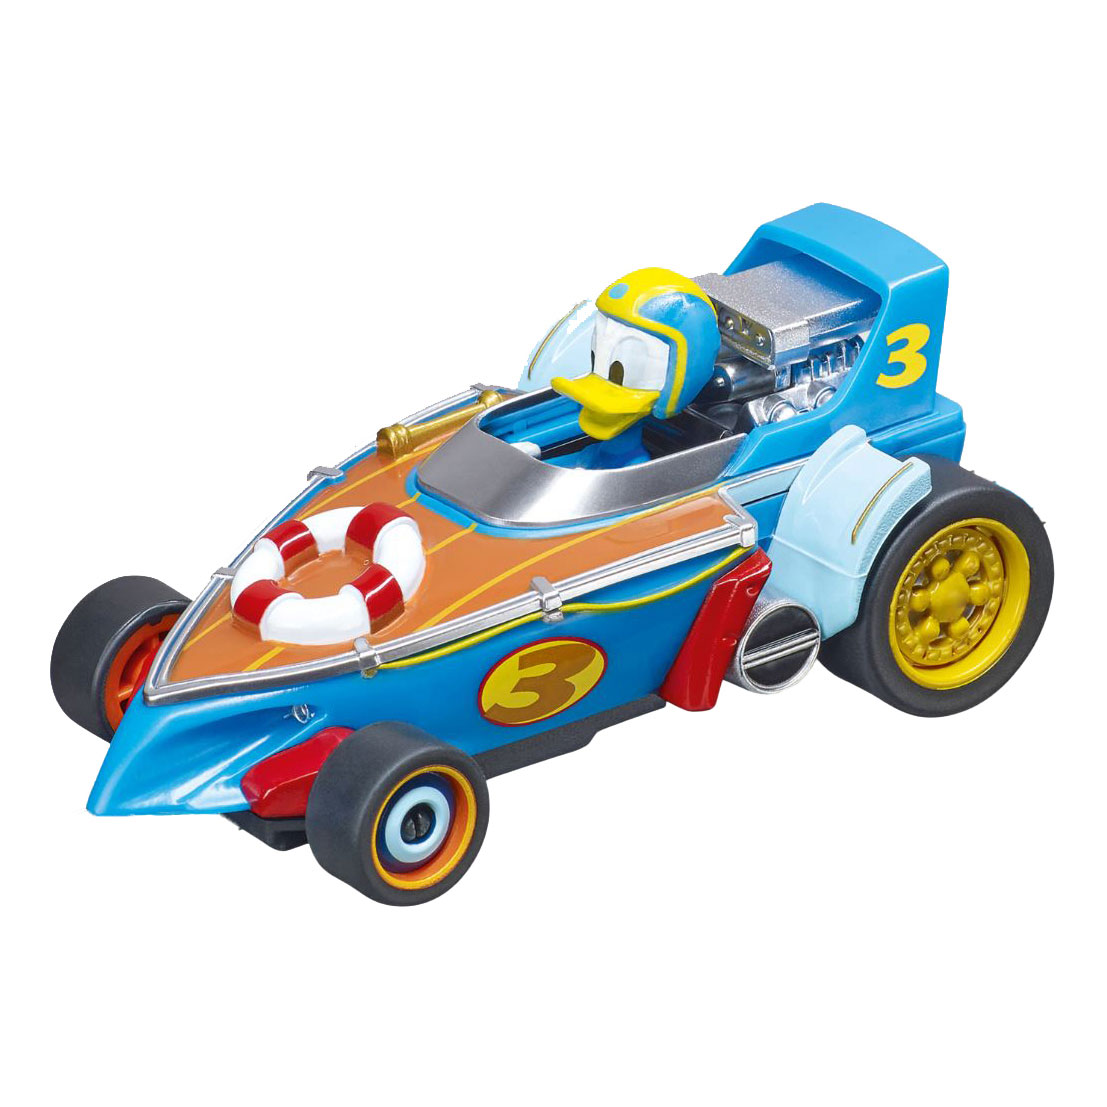 Carrera First Disney Pixar Cars Slot Car Racing Playset